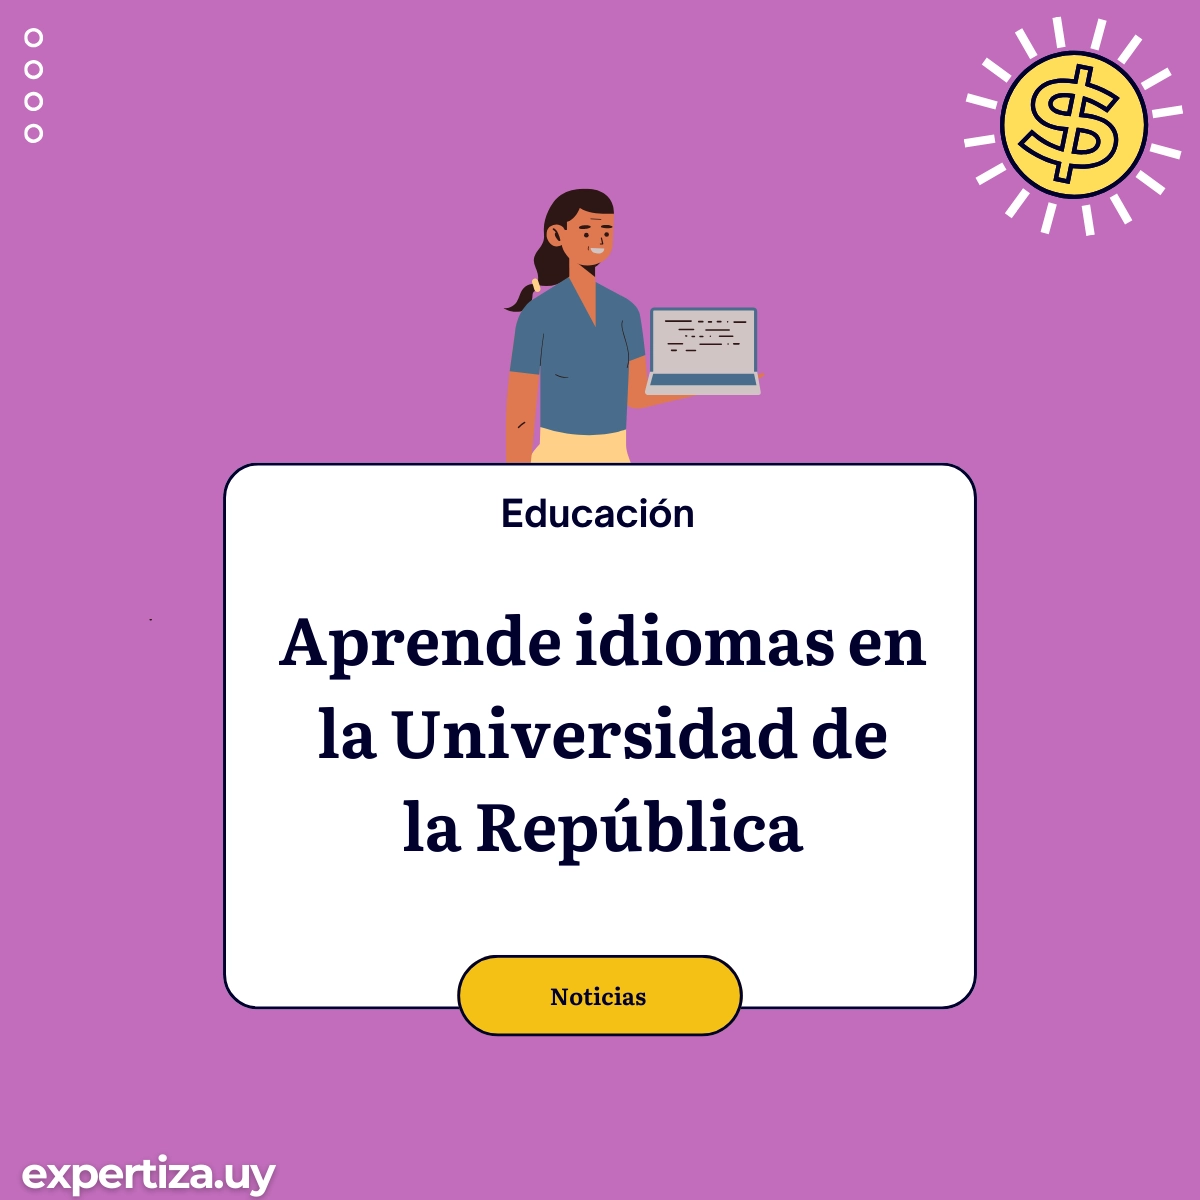 Aprende idiomas en la Universidad de la República.